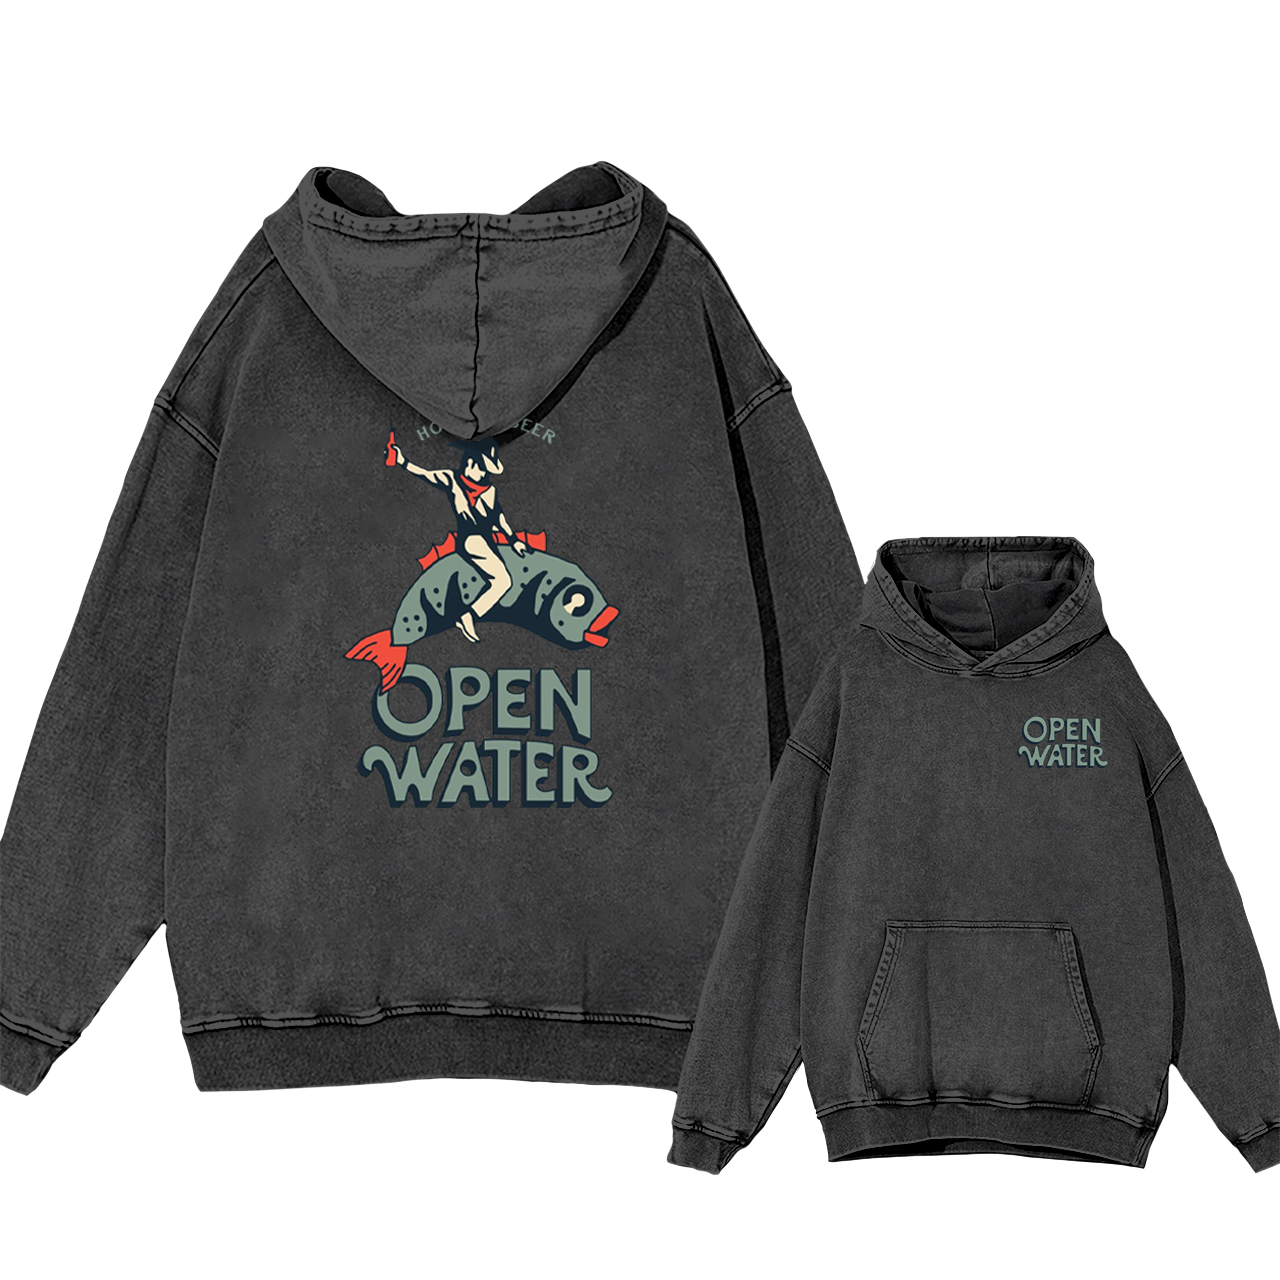 Open Water Cowboy Fishing Garment-Dye Hoodies